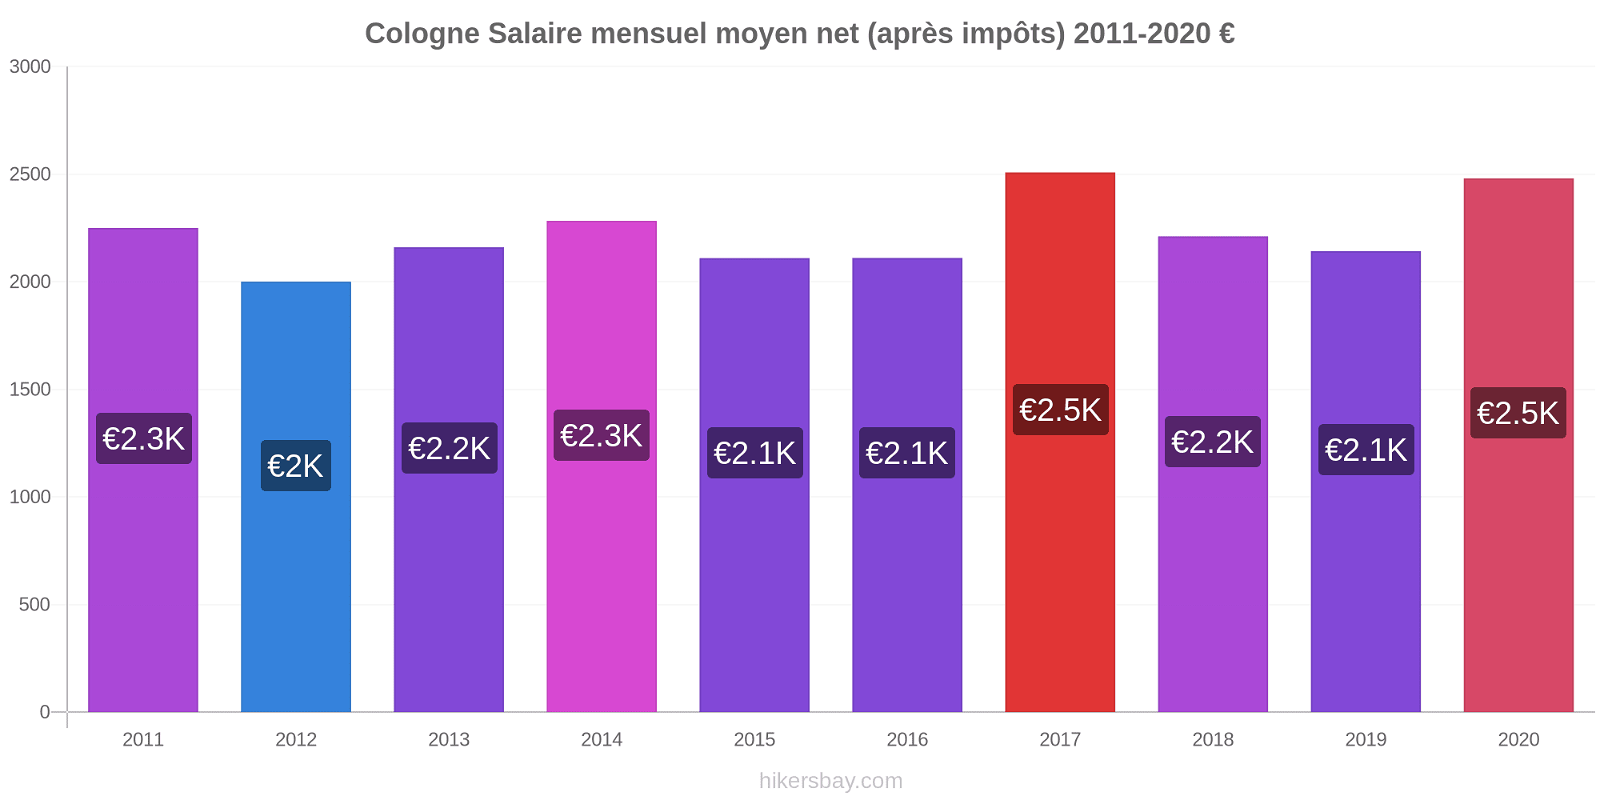 Cologne changements de prix Salaire mensuel Net (après impôts) hikersbay.com